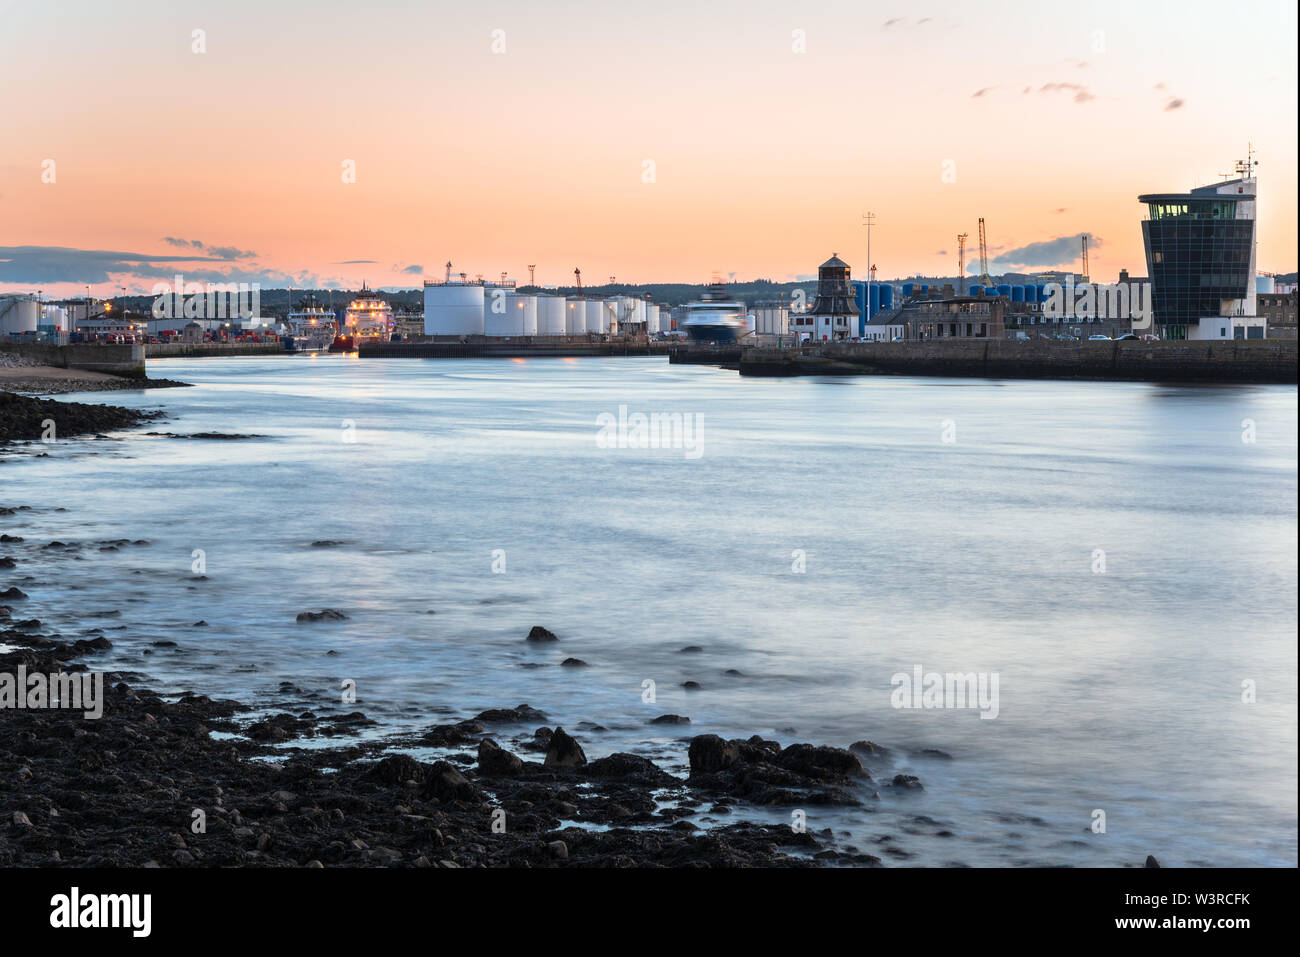 Vista di un porto industriale con i serbatoi del carburante e i depositi su piloni a crepuscolo Foto Stock